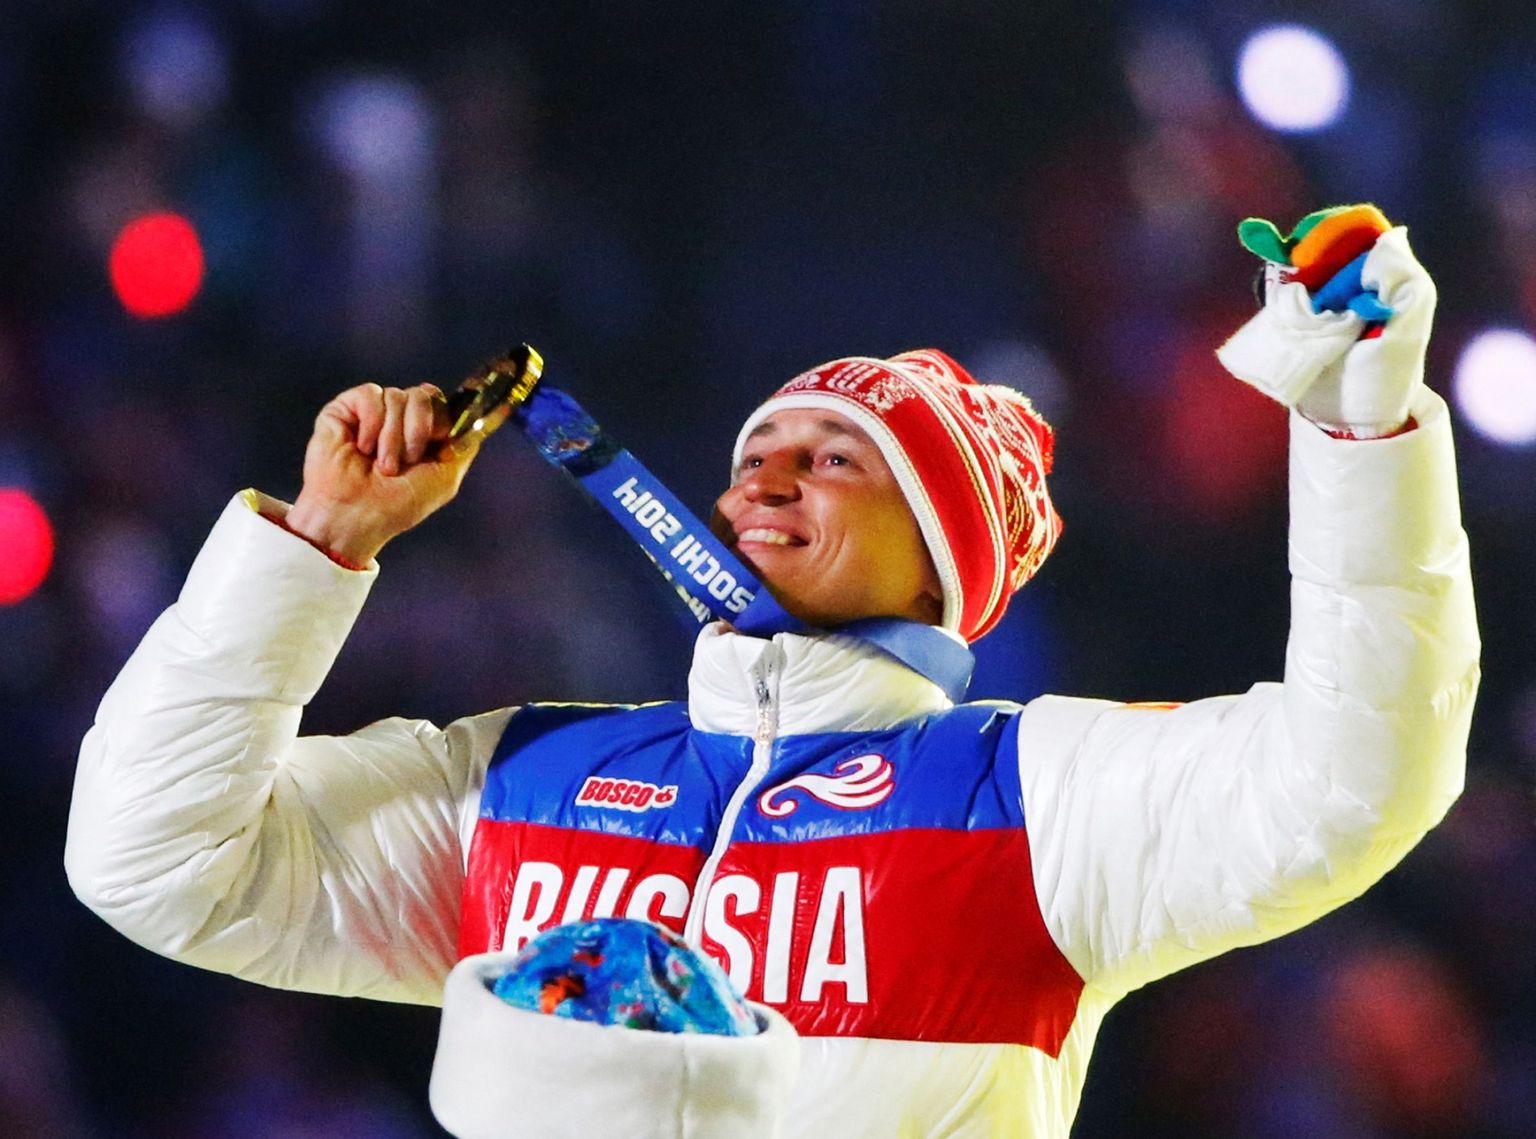 Meeste 50 km sõidus Sotši olümpial kulla võitnud Aleksander Legkov sai medali kaela mängude lõputseremoonial.